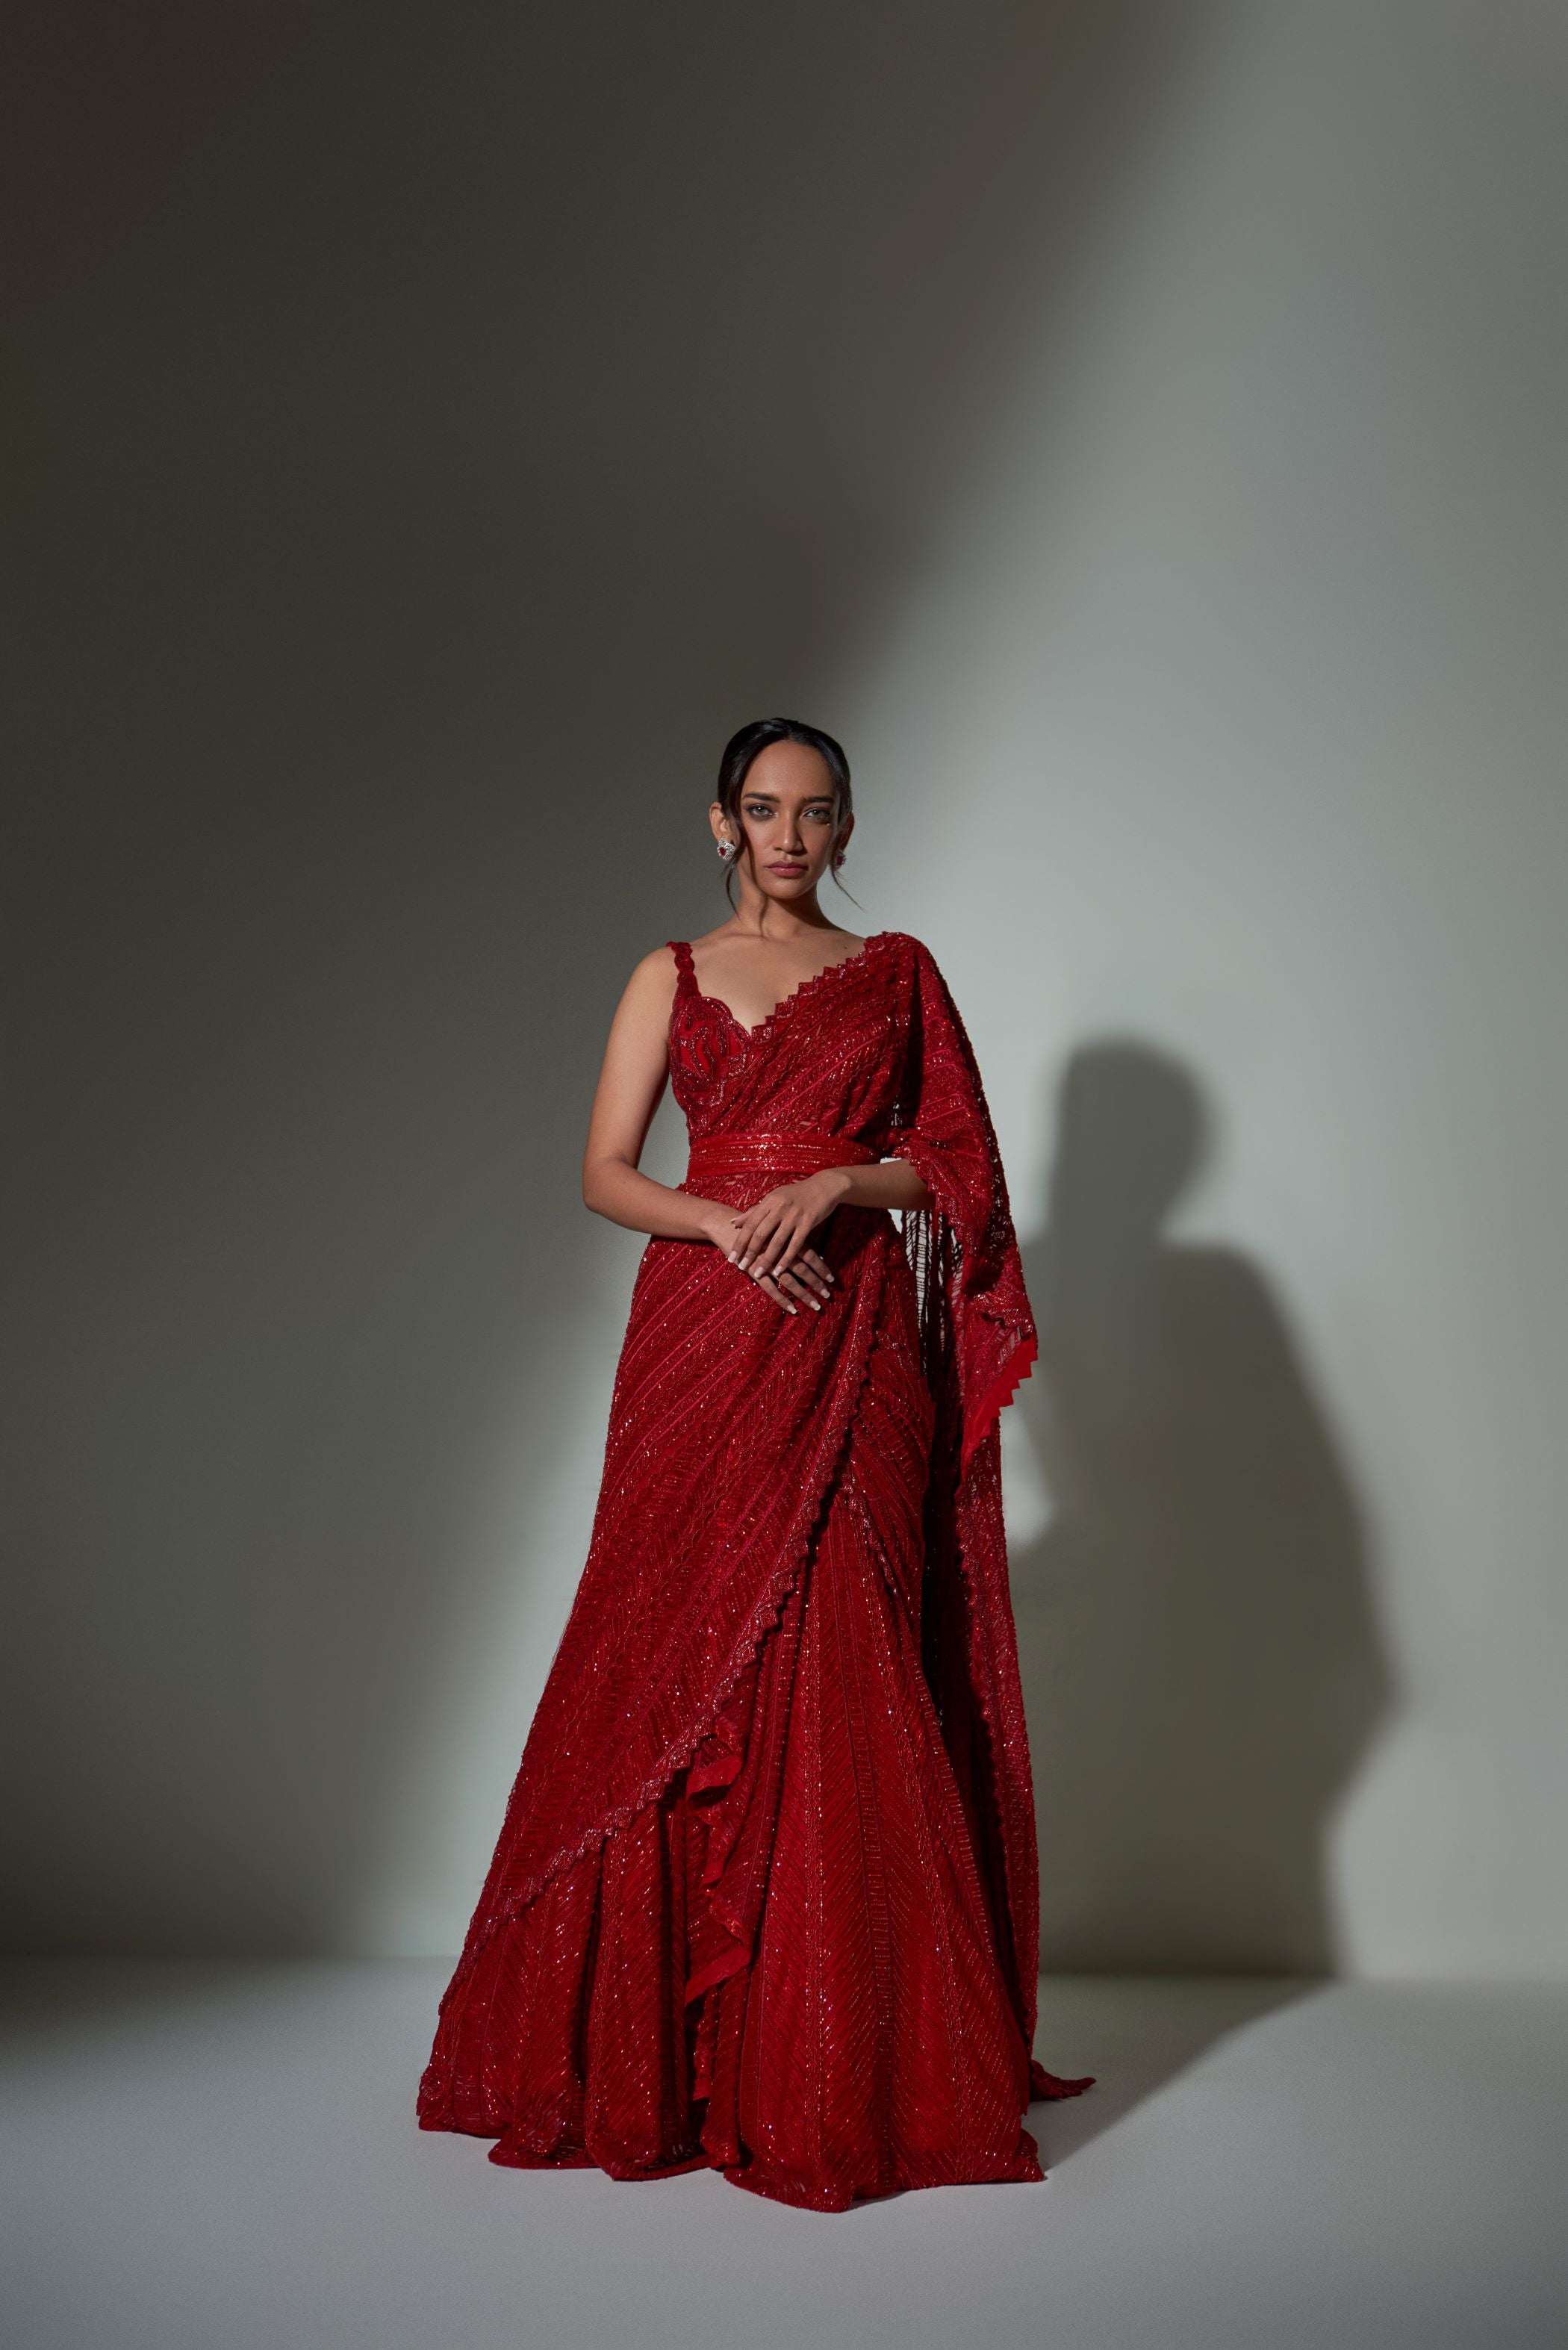 Sampradaya on Behance | Half saree designs, Half saree lehenga, Half saree